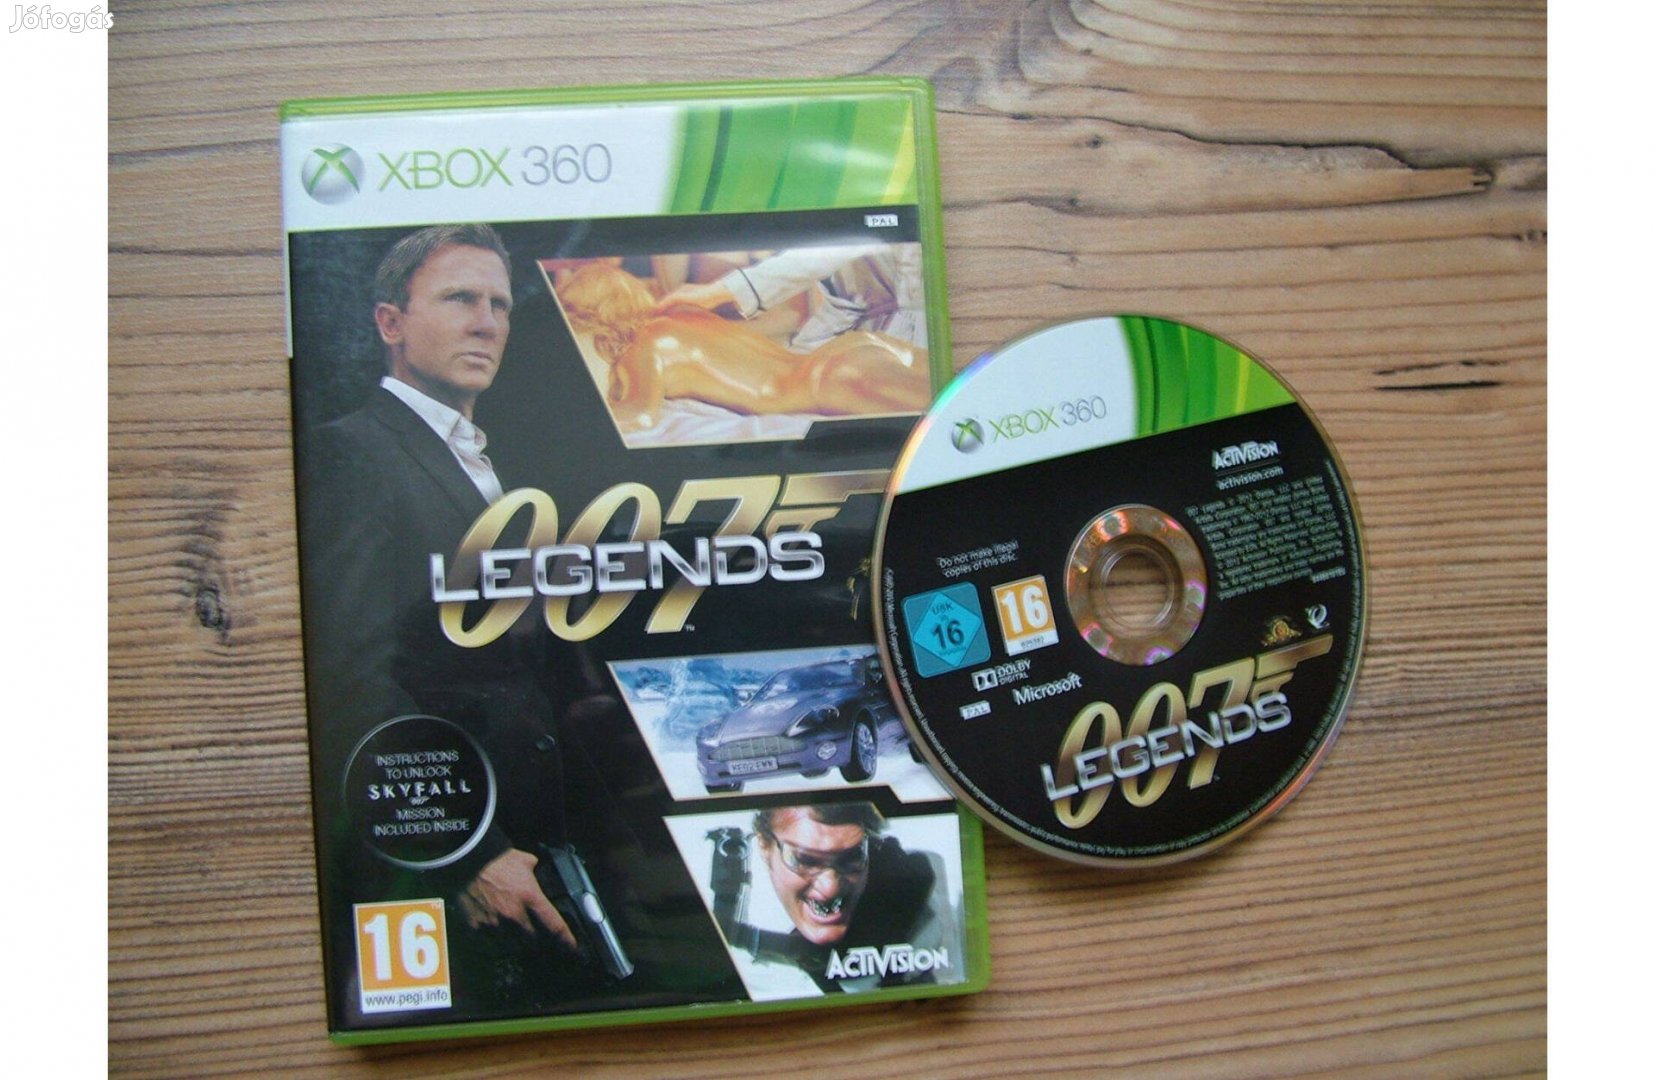 Xbox 360 007 Legends játék James Bond